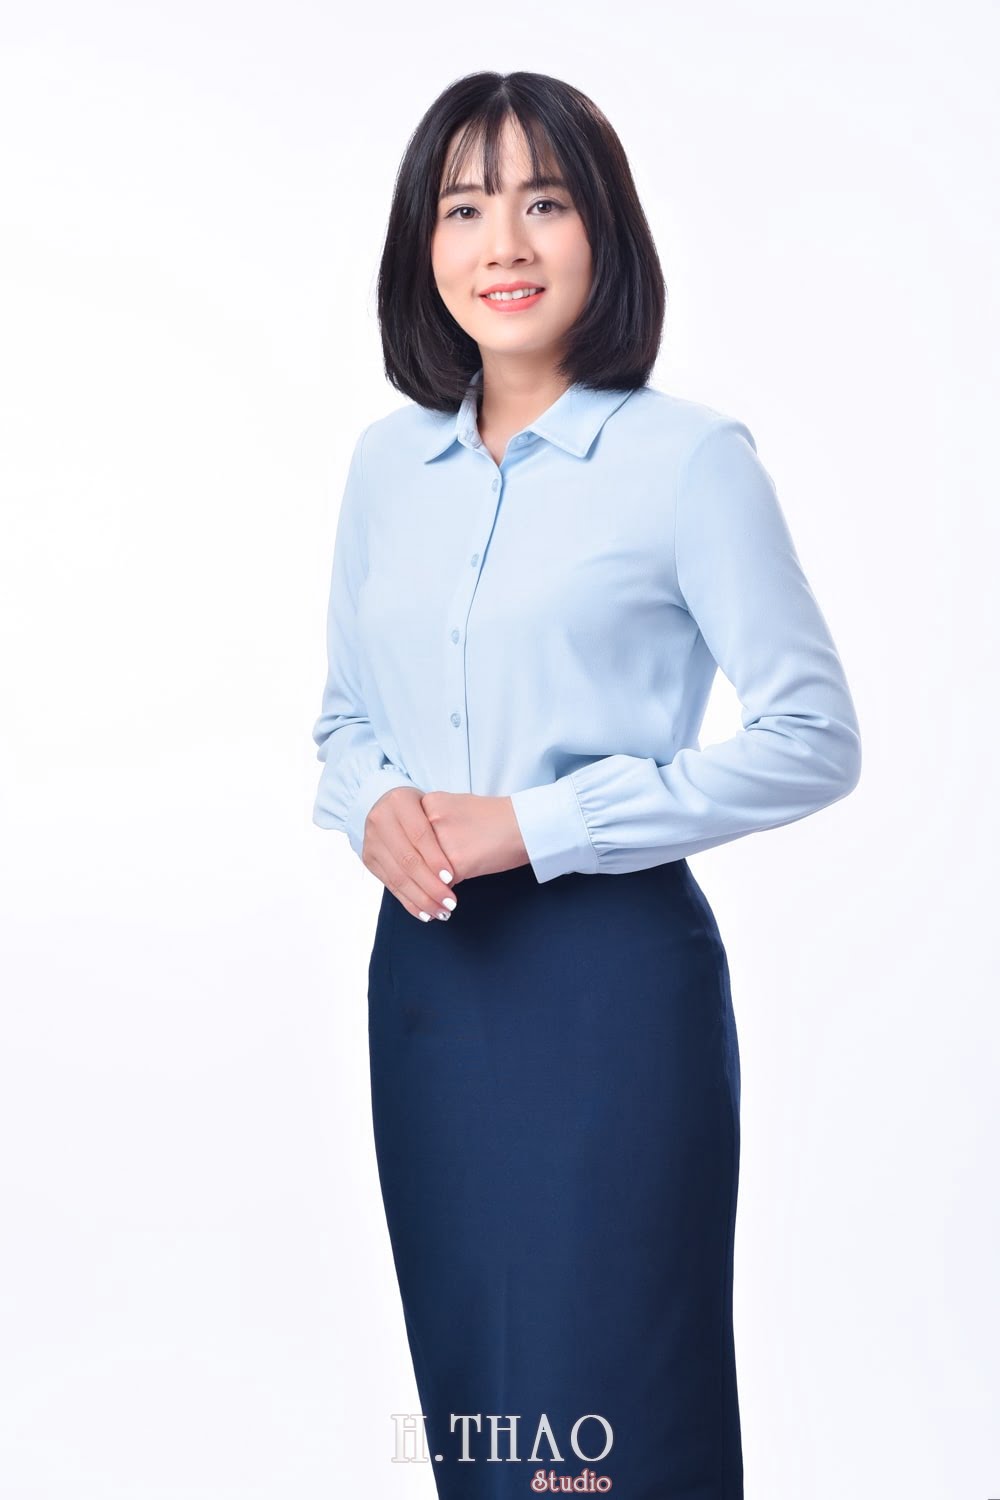 Anh profile  10 min - Album ảnh profile cá nhân chị Hòa đẹp – HThao Studio